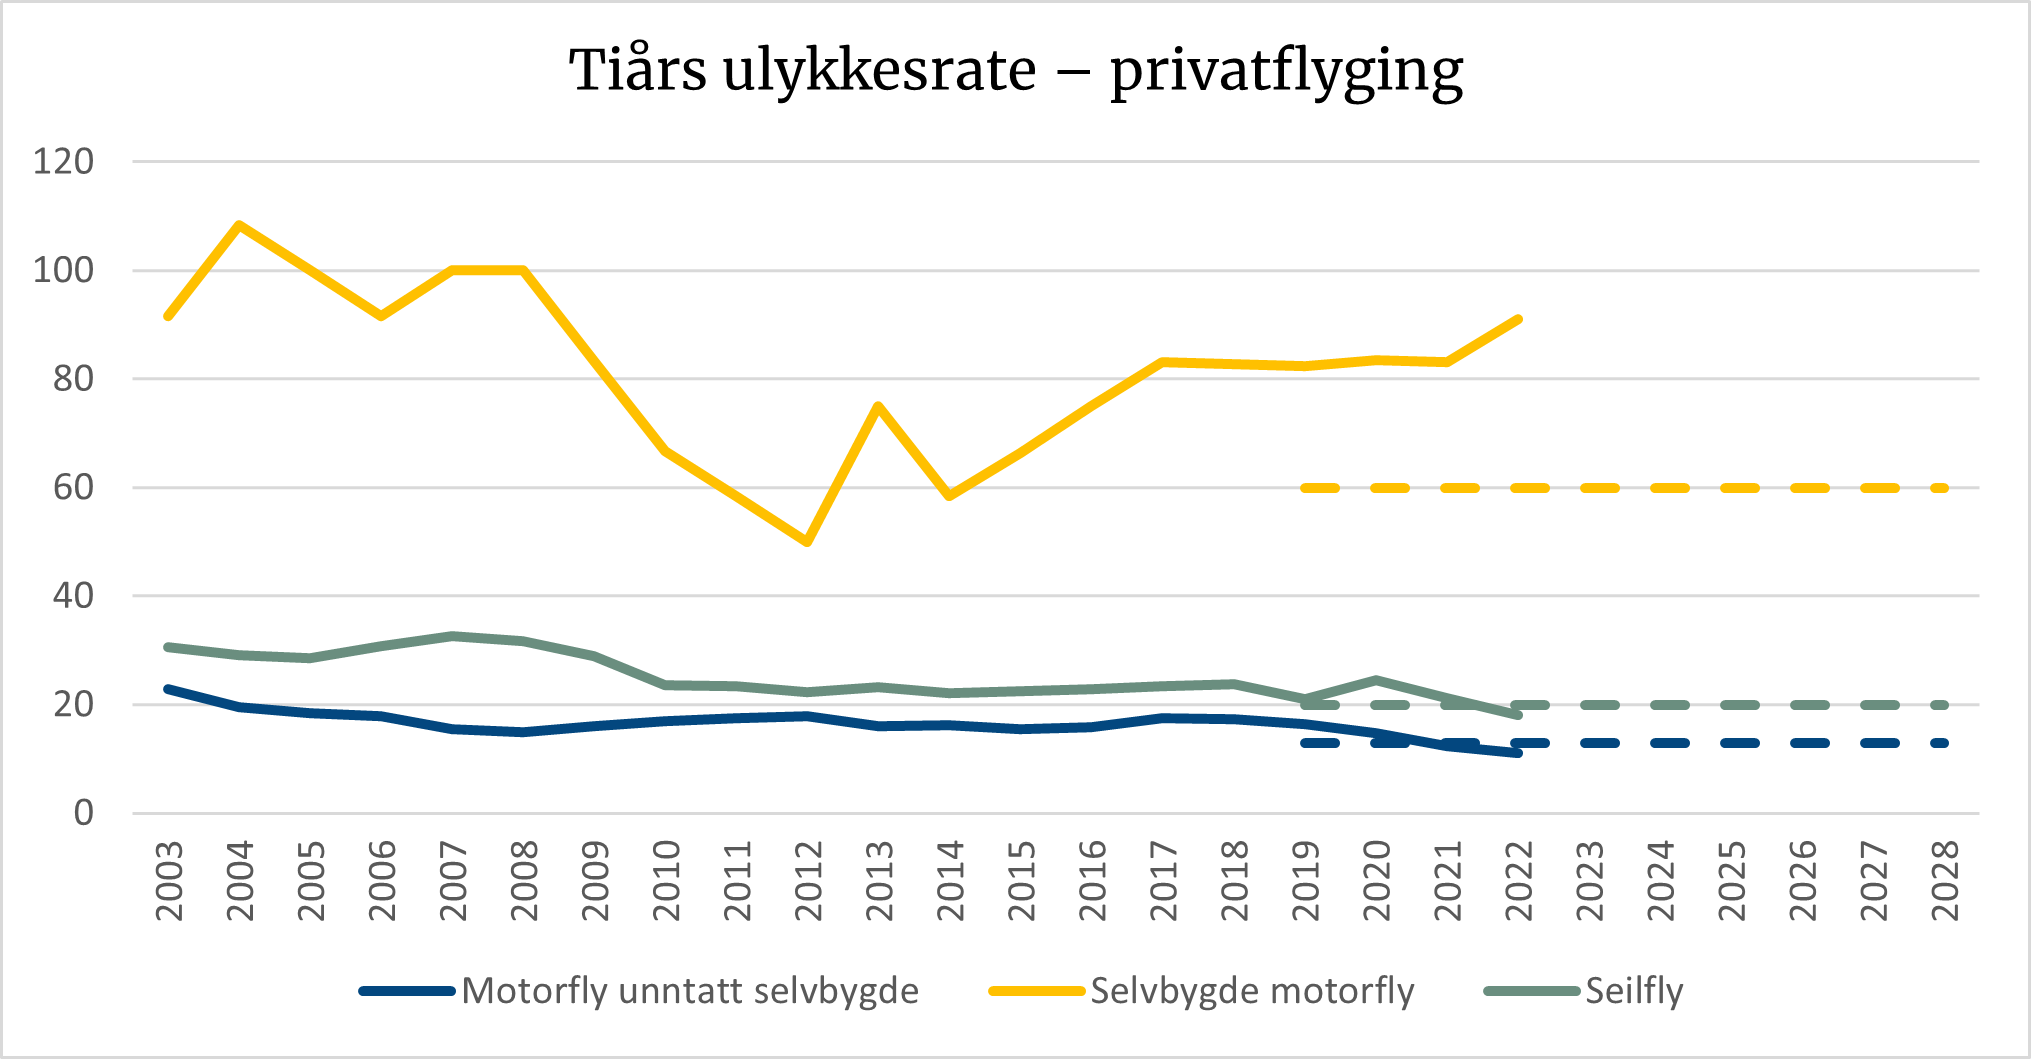 Diagrammet viser tiårs ulykkesrate for private motorfly unntatt selvbygde, selvbygde motorfly og seilfly. Ulykkesraten for selvbygde motorfly har godt litt opp, ellers er de andre ratene lavere enn sikkerhetsmålet.